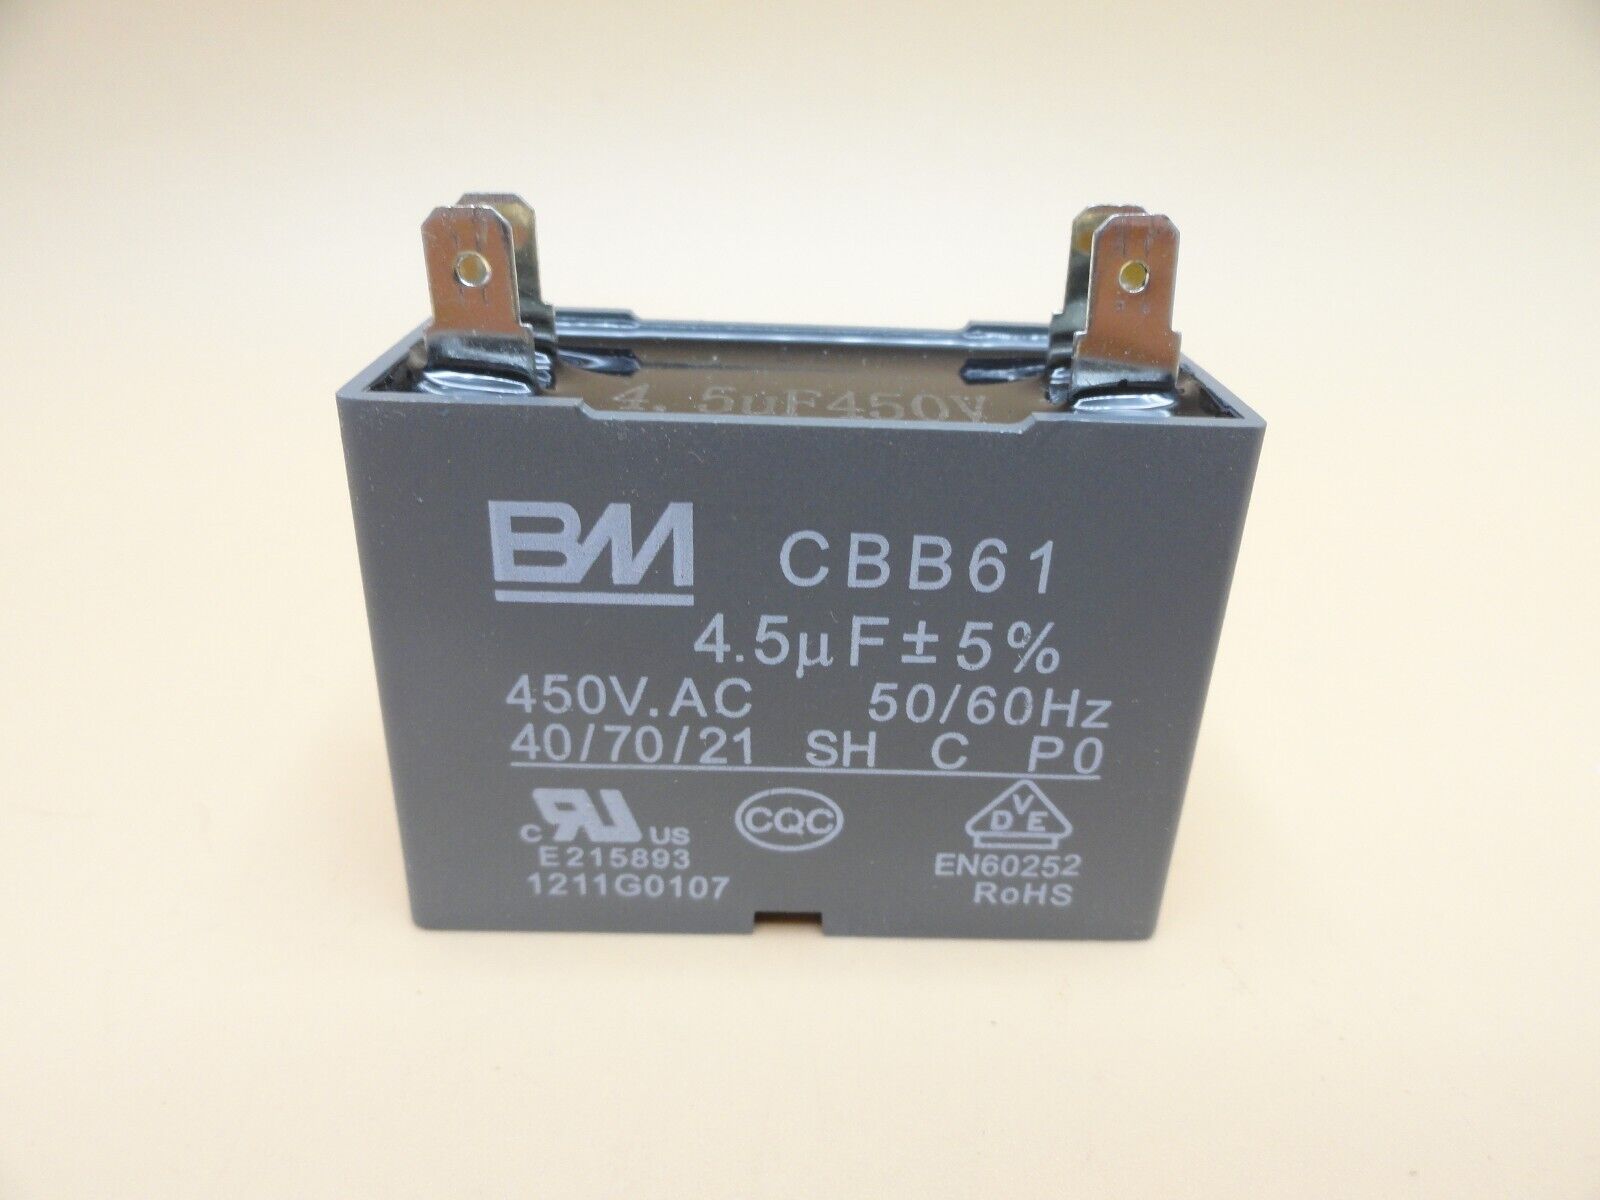 BM 4.5uF 450VAC Capacitor 50/60hz CBB61 (Qty 1)